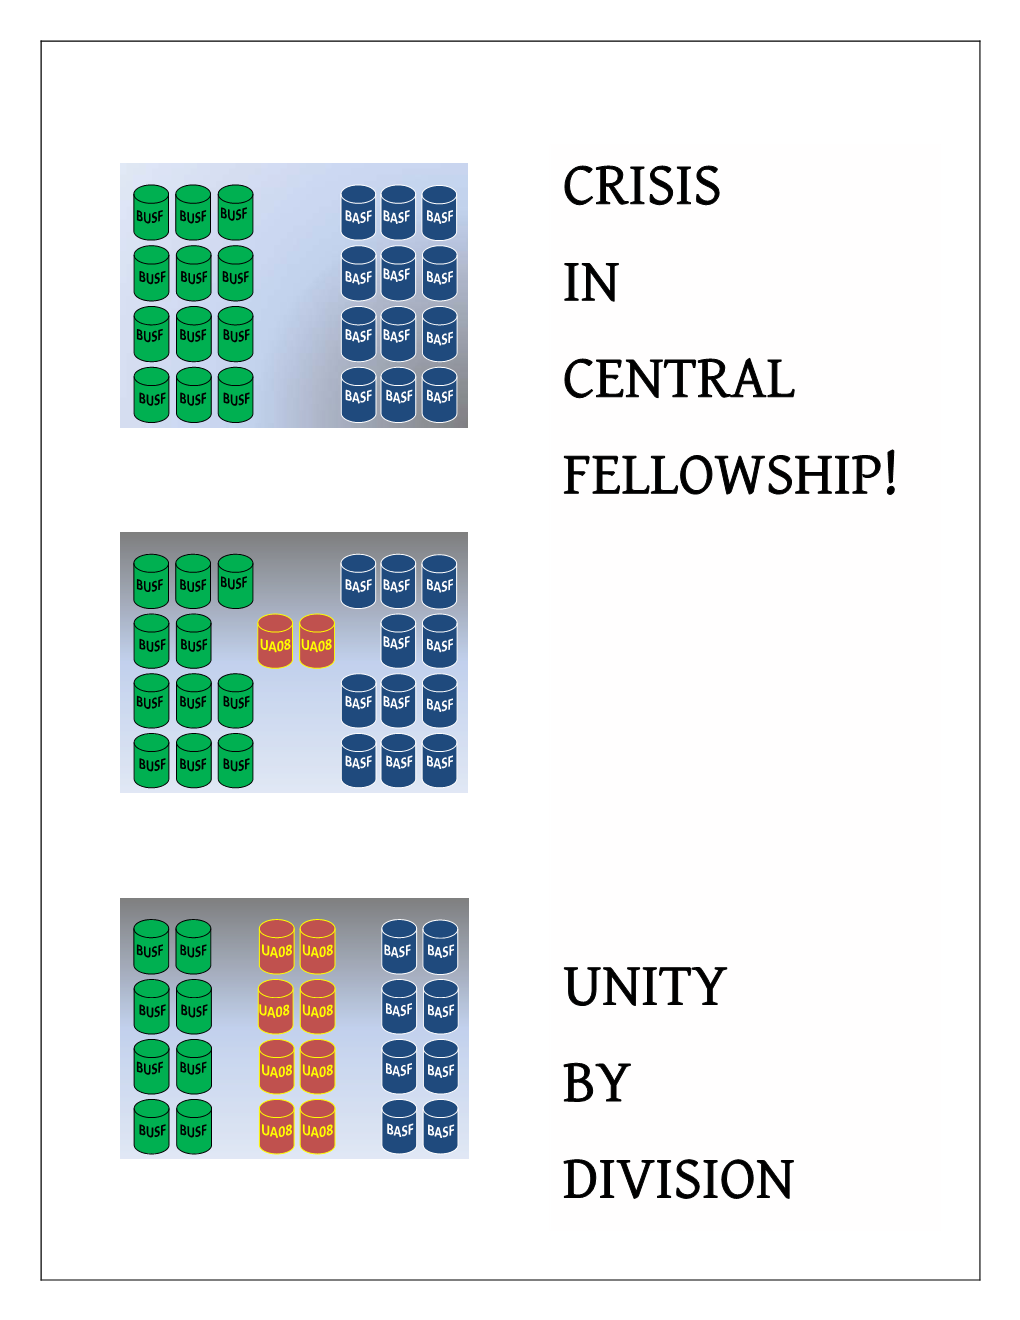 Crisis in Central Fellowship